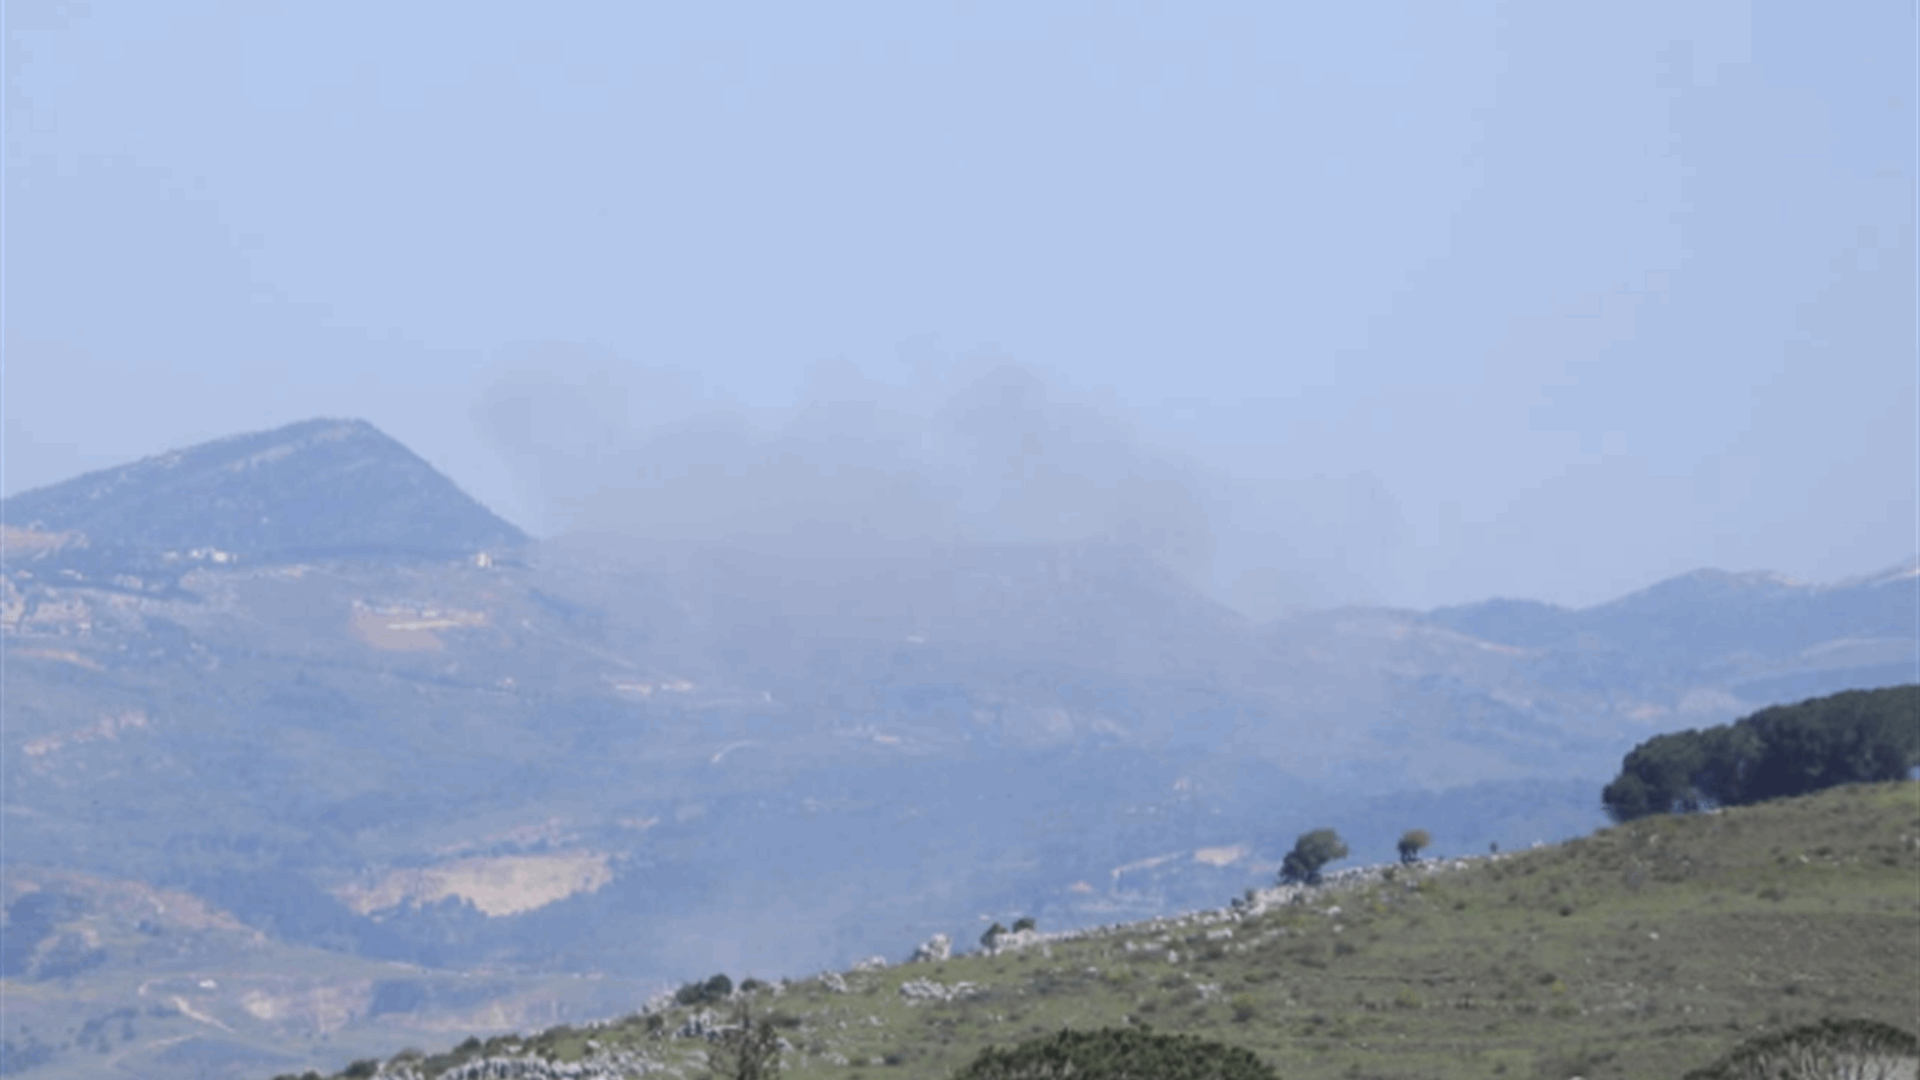 غارة اسرائيلية على المنطقة الواقعة بين العيشية والوازعية في جبل الريحان بالقرب من مكان سقوط الطائرة المسيرة هرمز الذي أسقطها حزب الله ليل أمس